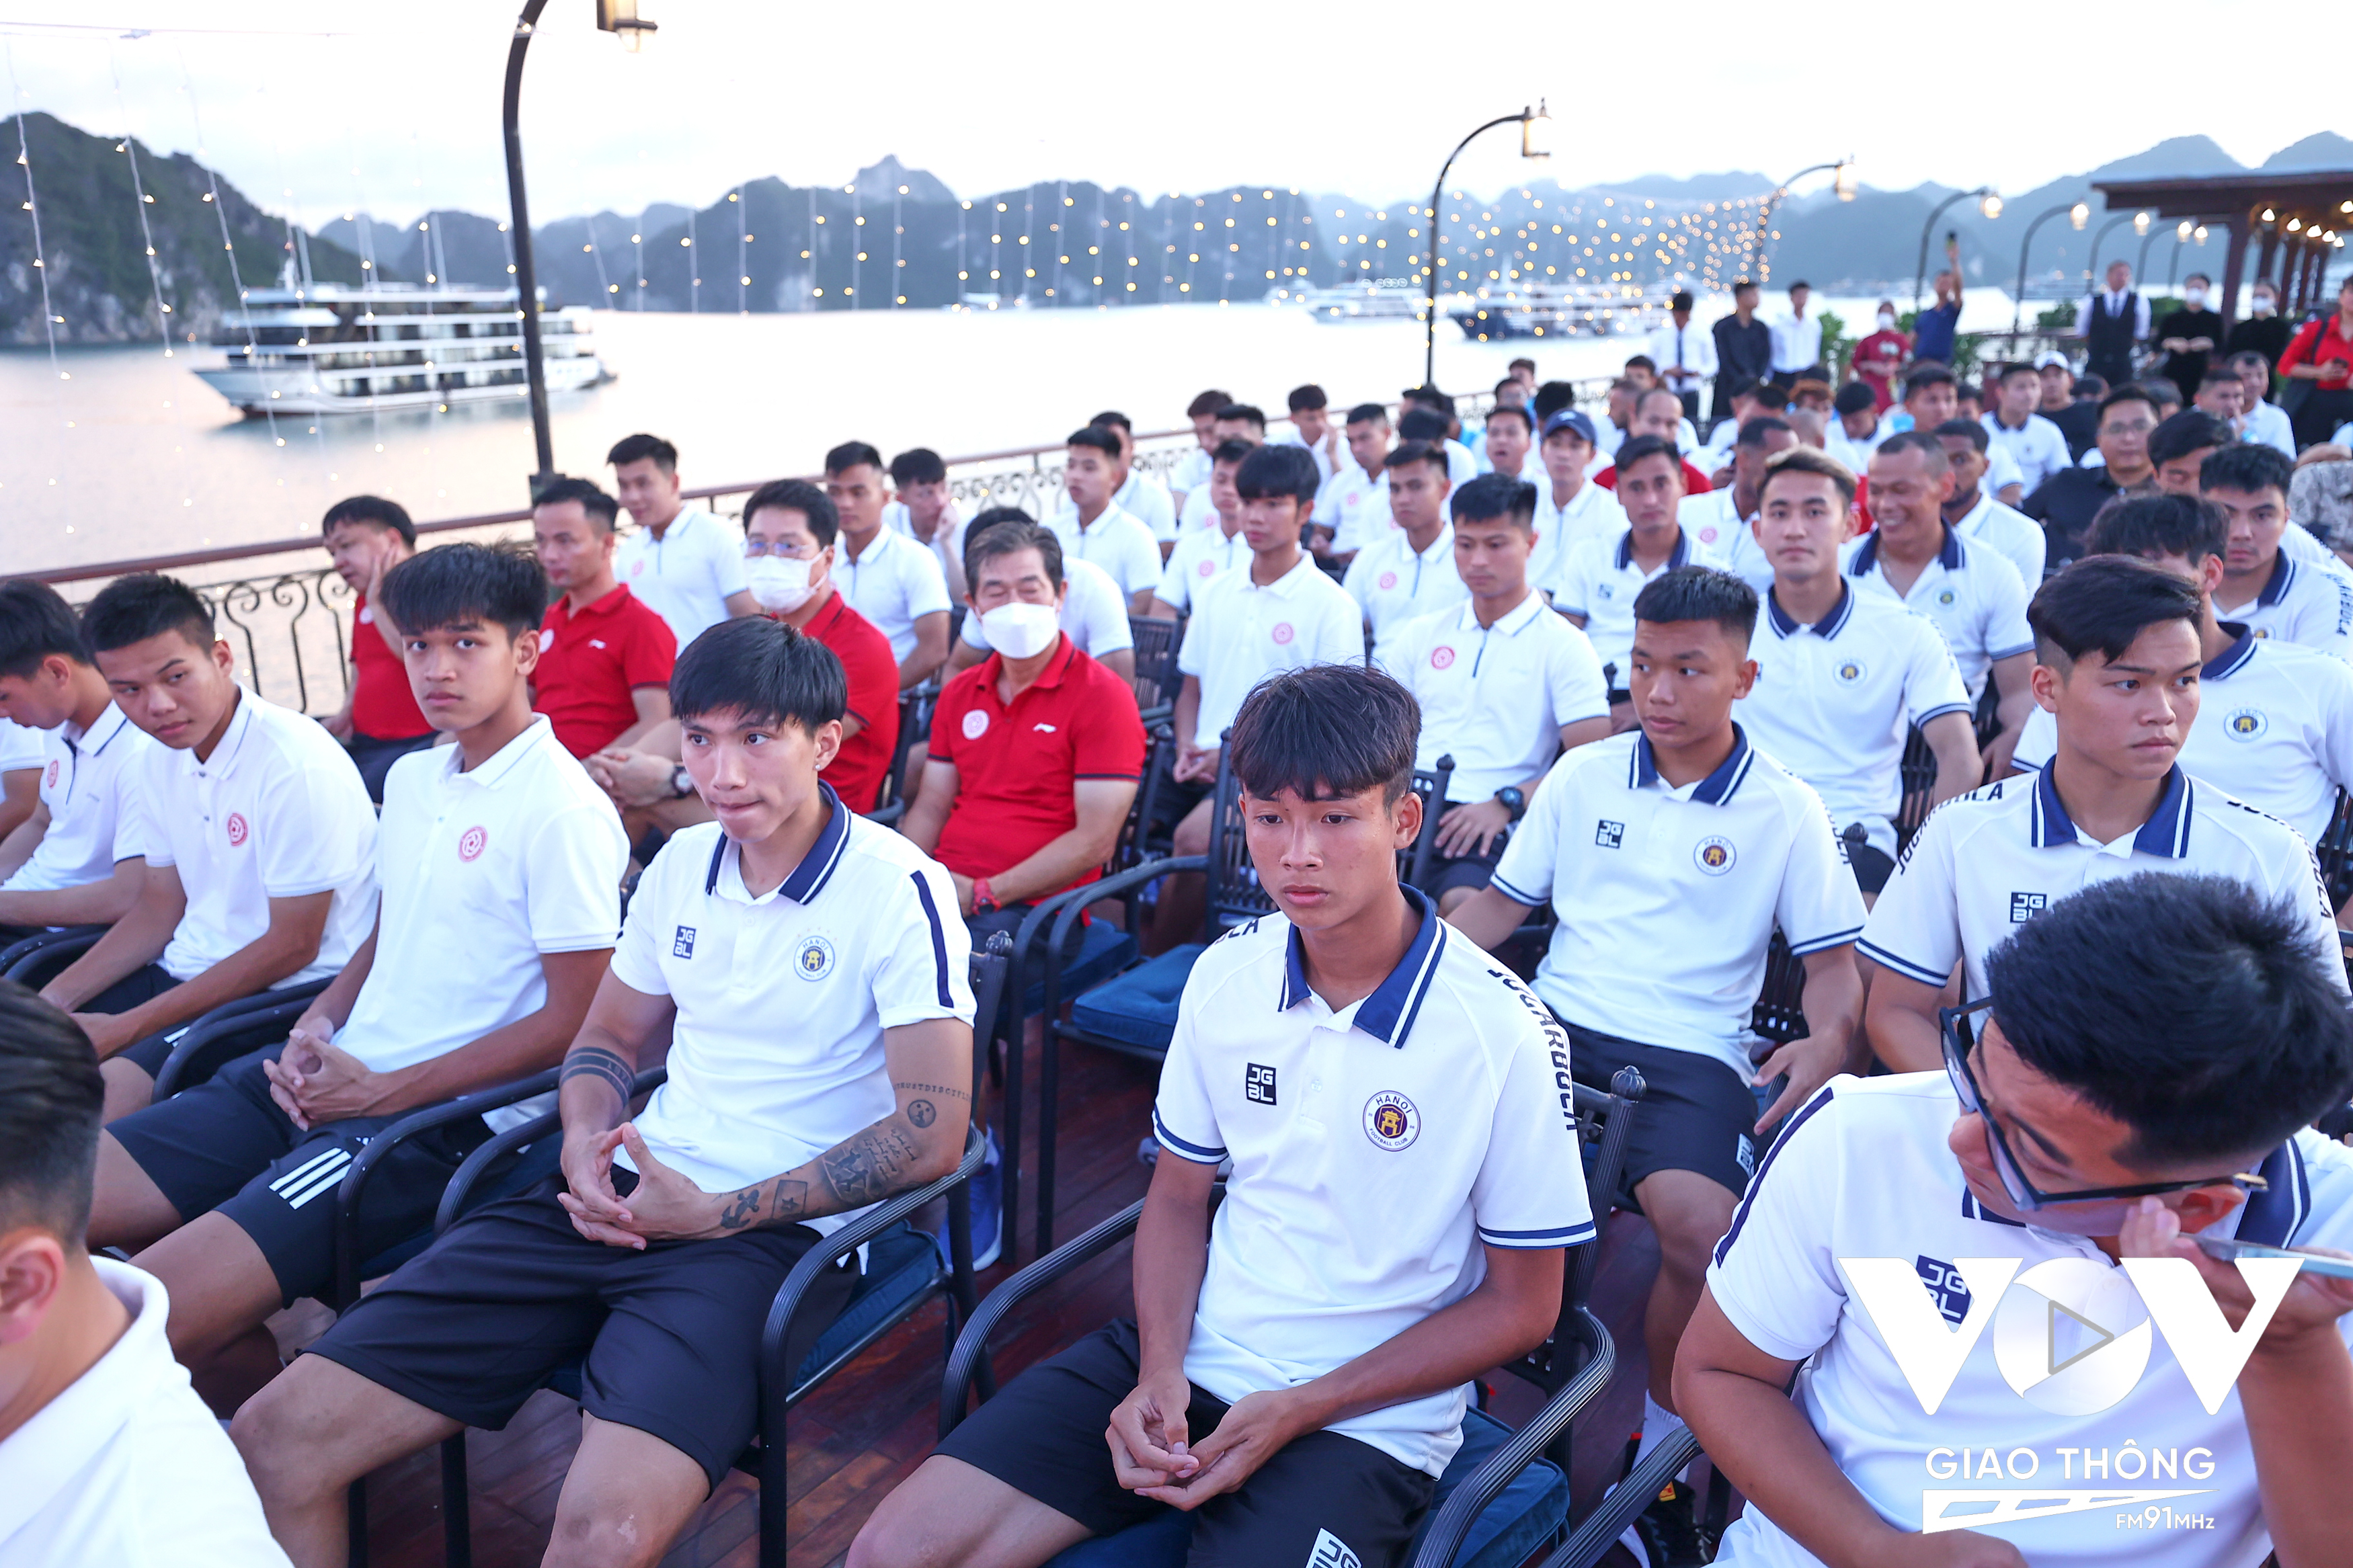 Cúp Tứ hùng quy tụ những đội bóng 'hot' nhất V-League là Hà Nội FC, Viettel, HAGL và chủ nhà Hải Phòng.